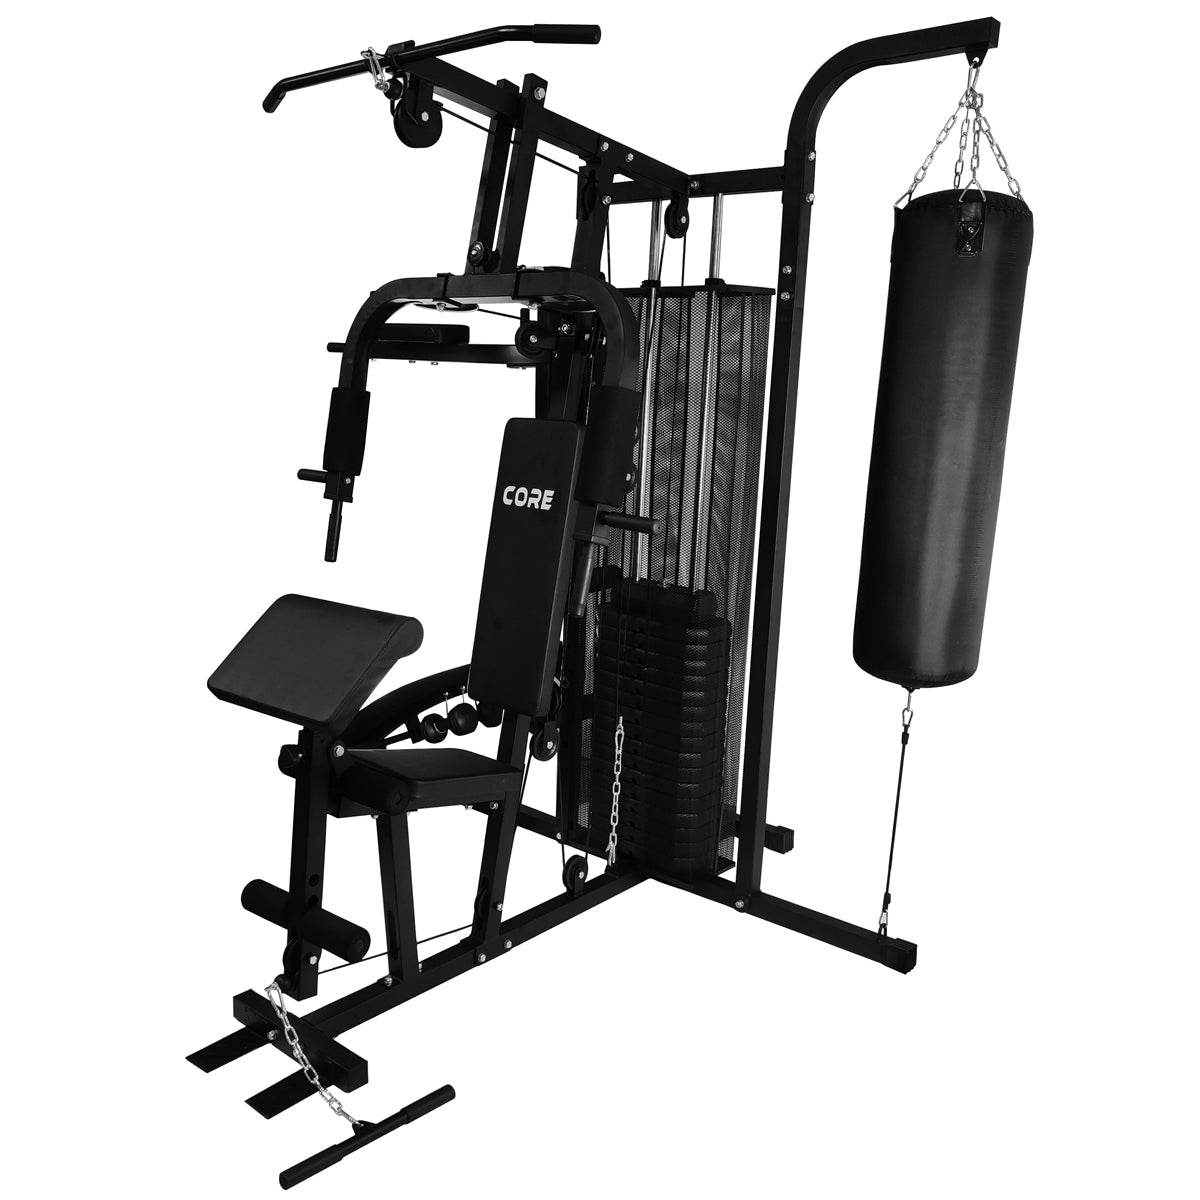 Multiestación musculación compact con cargas guiadas Home Gym Corength